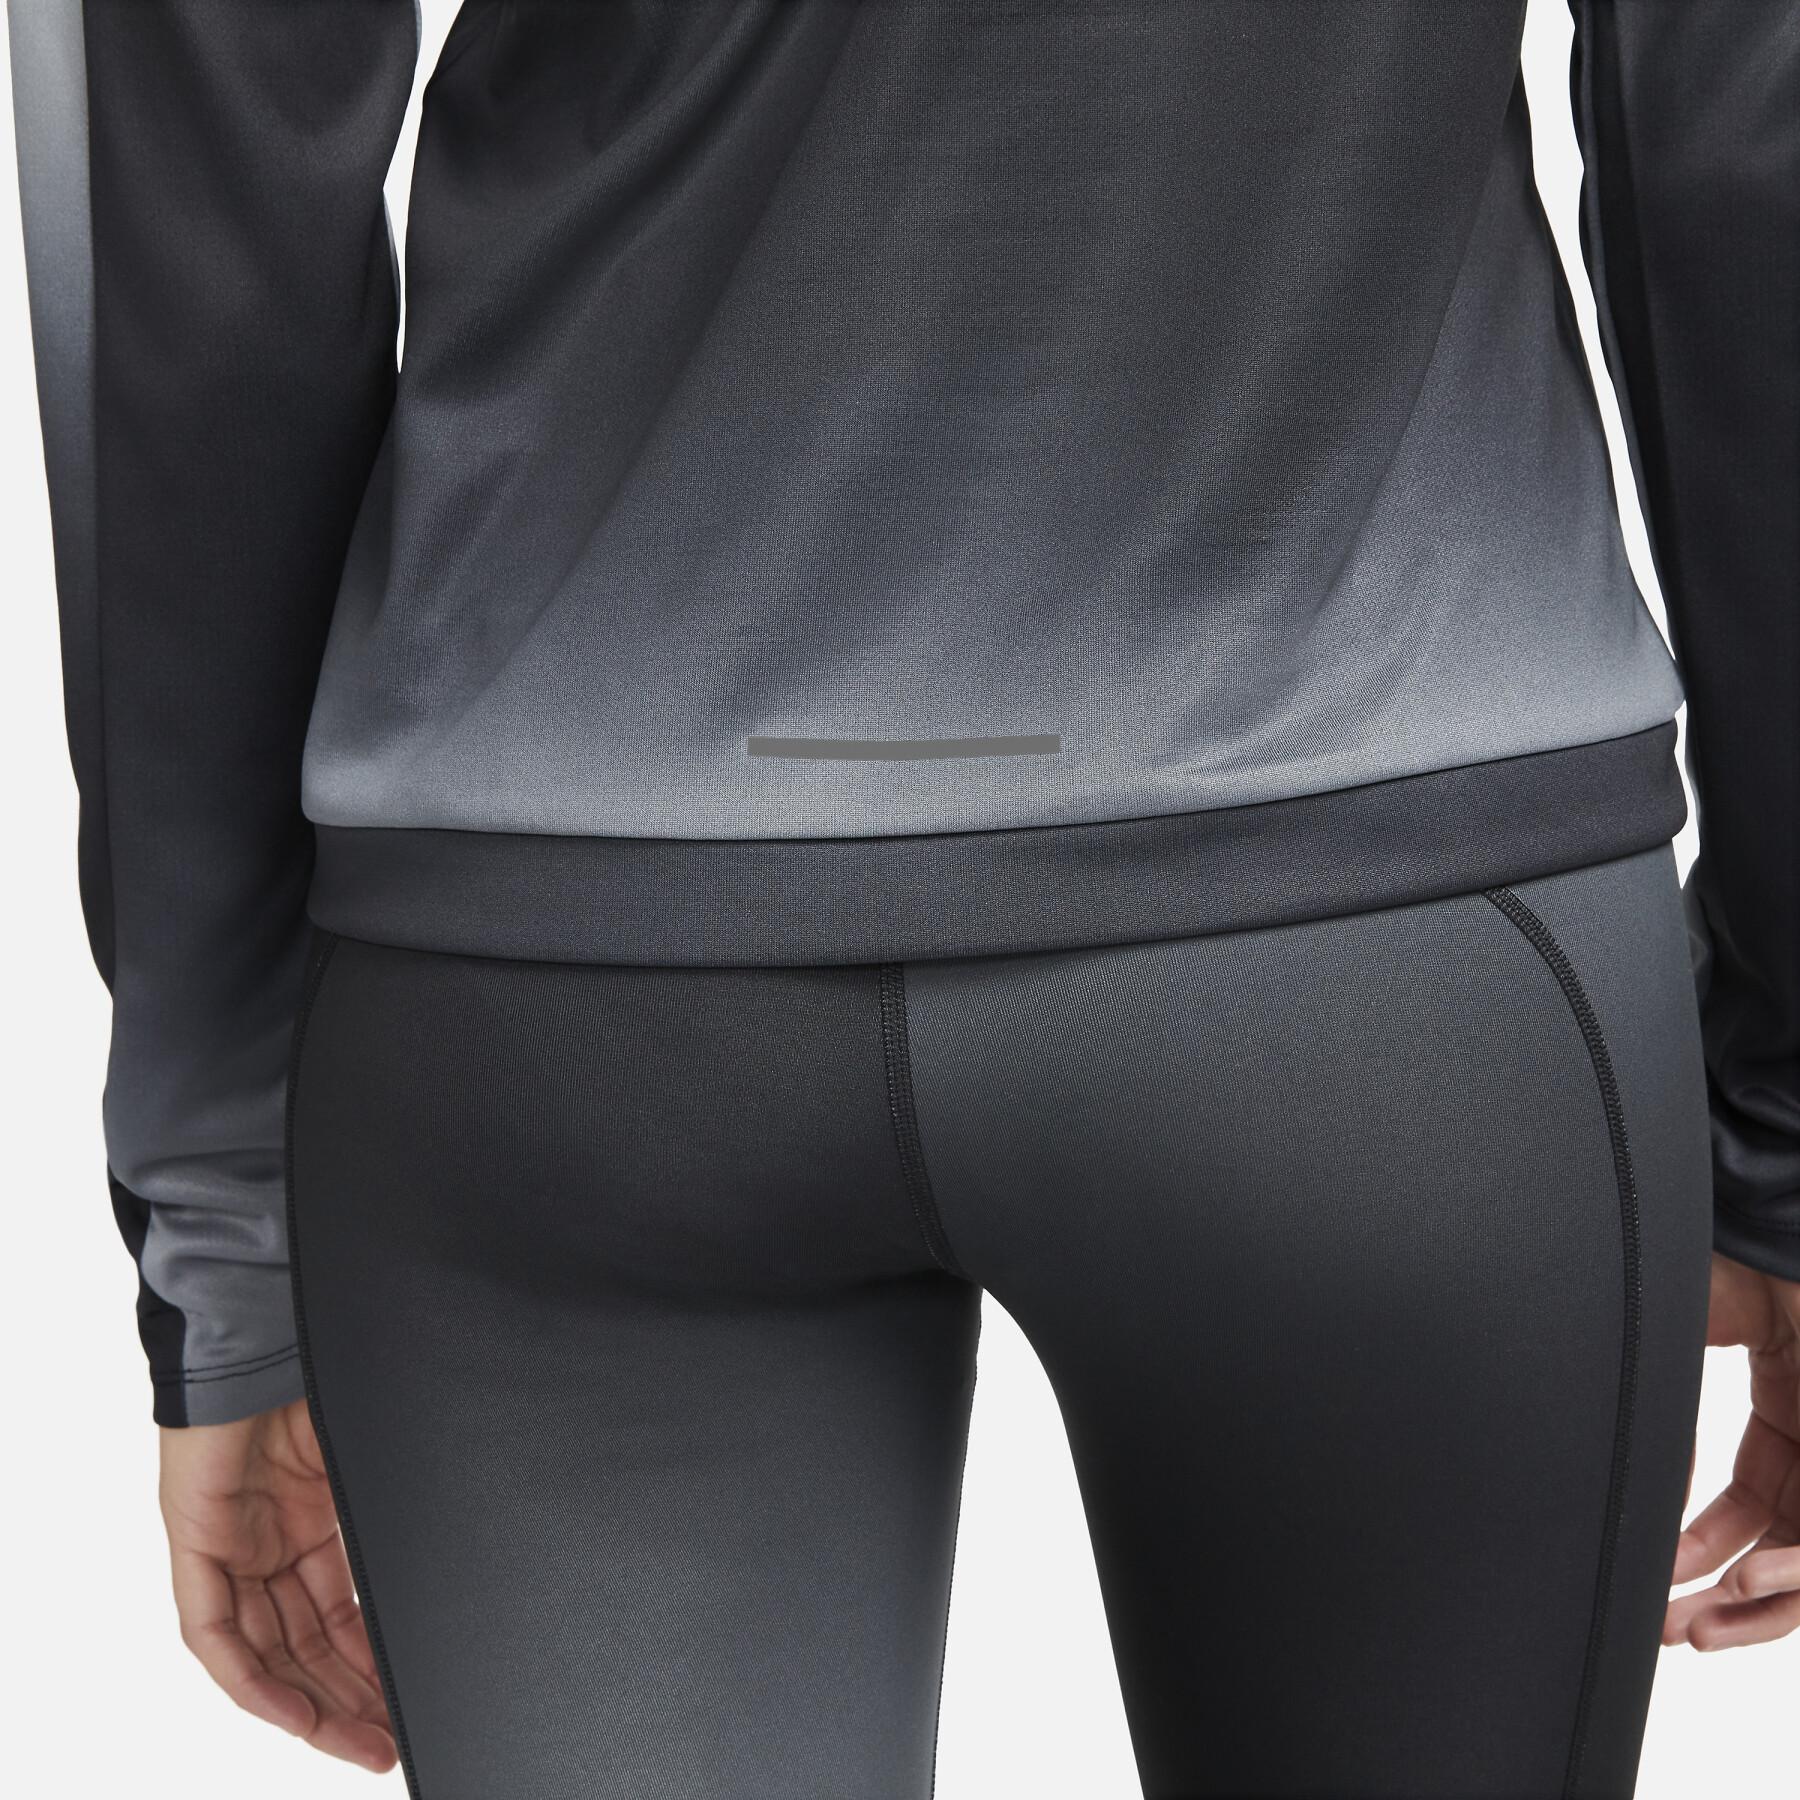 Sweatshirt demi-zip femme Nike Dri-FIT Swoosh Print